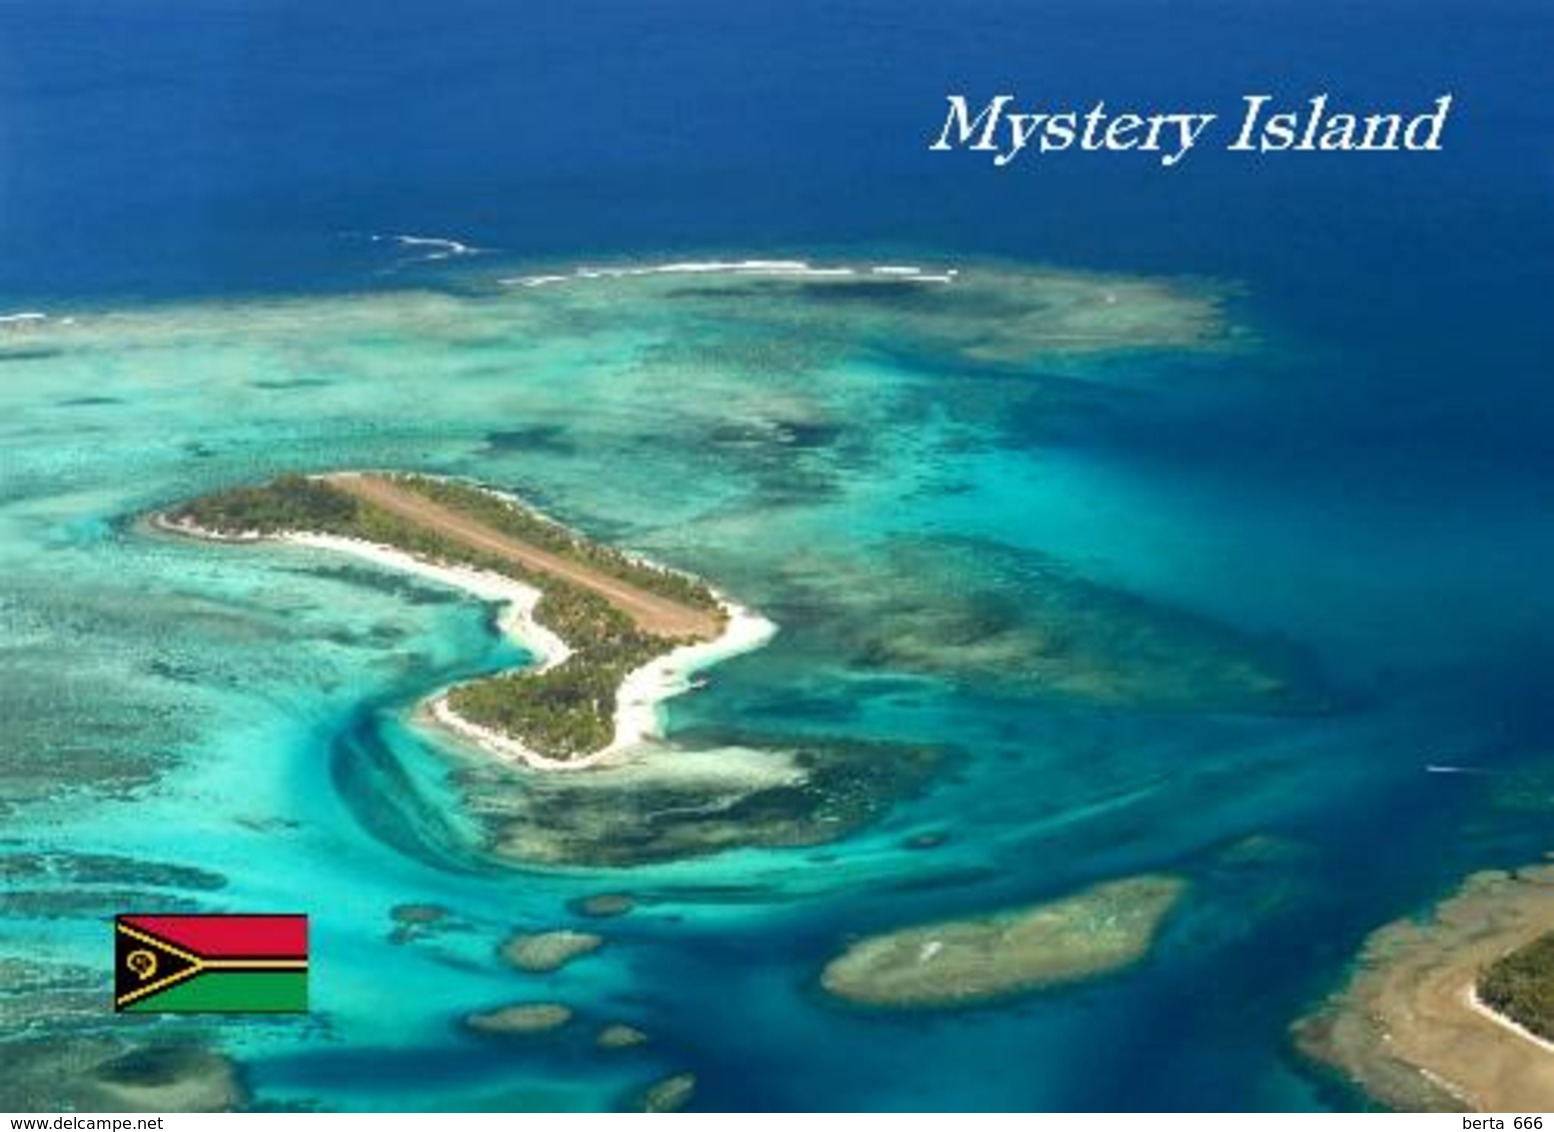 Vanuatu Mystery Island Aerial View New Postcard - Vanuatu